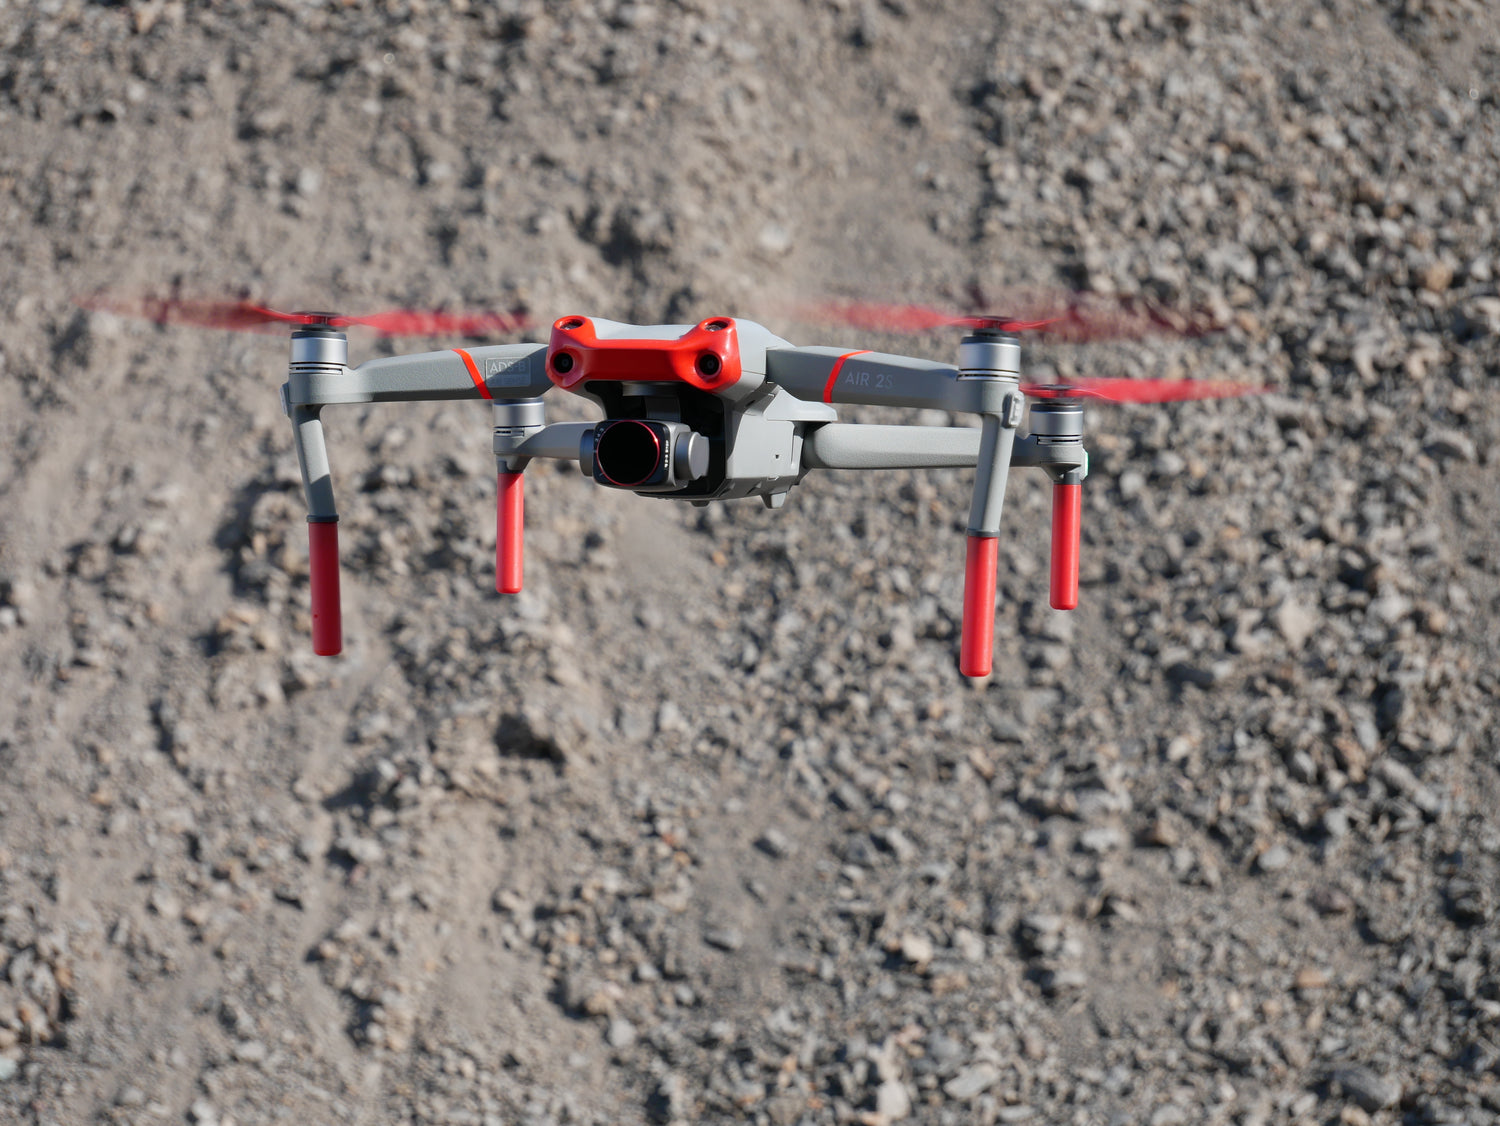 DJI Drohne mit Landegestell und roten Propellern vor einem steinigen Untergrund